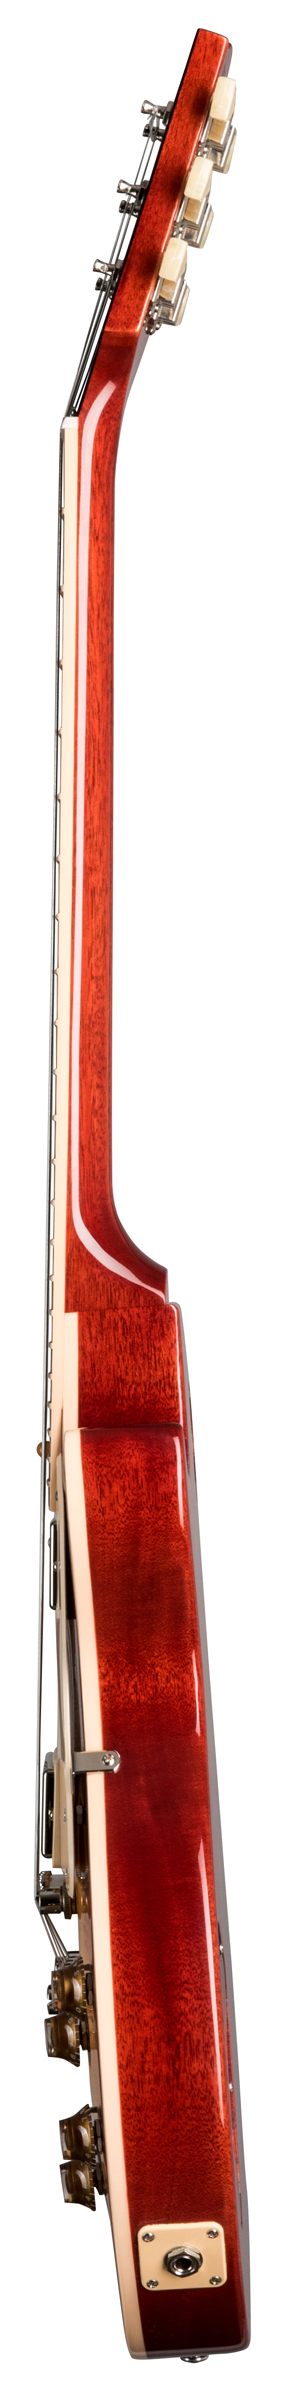 Gibson Les Paul Standard 50s Heritage Cherry Sunburst по цене 349 800 ₽